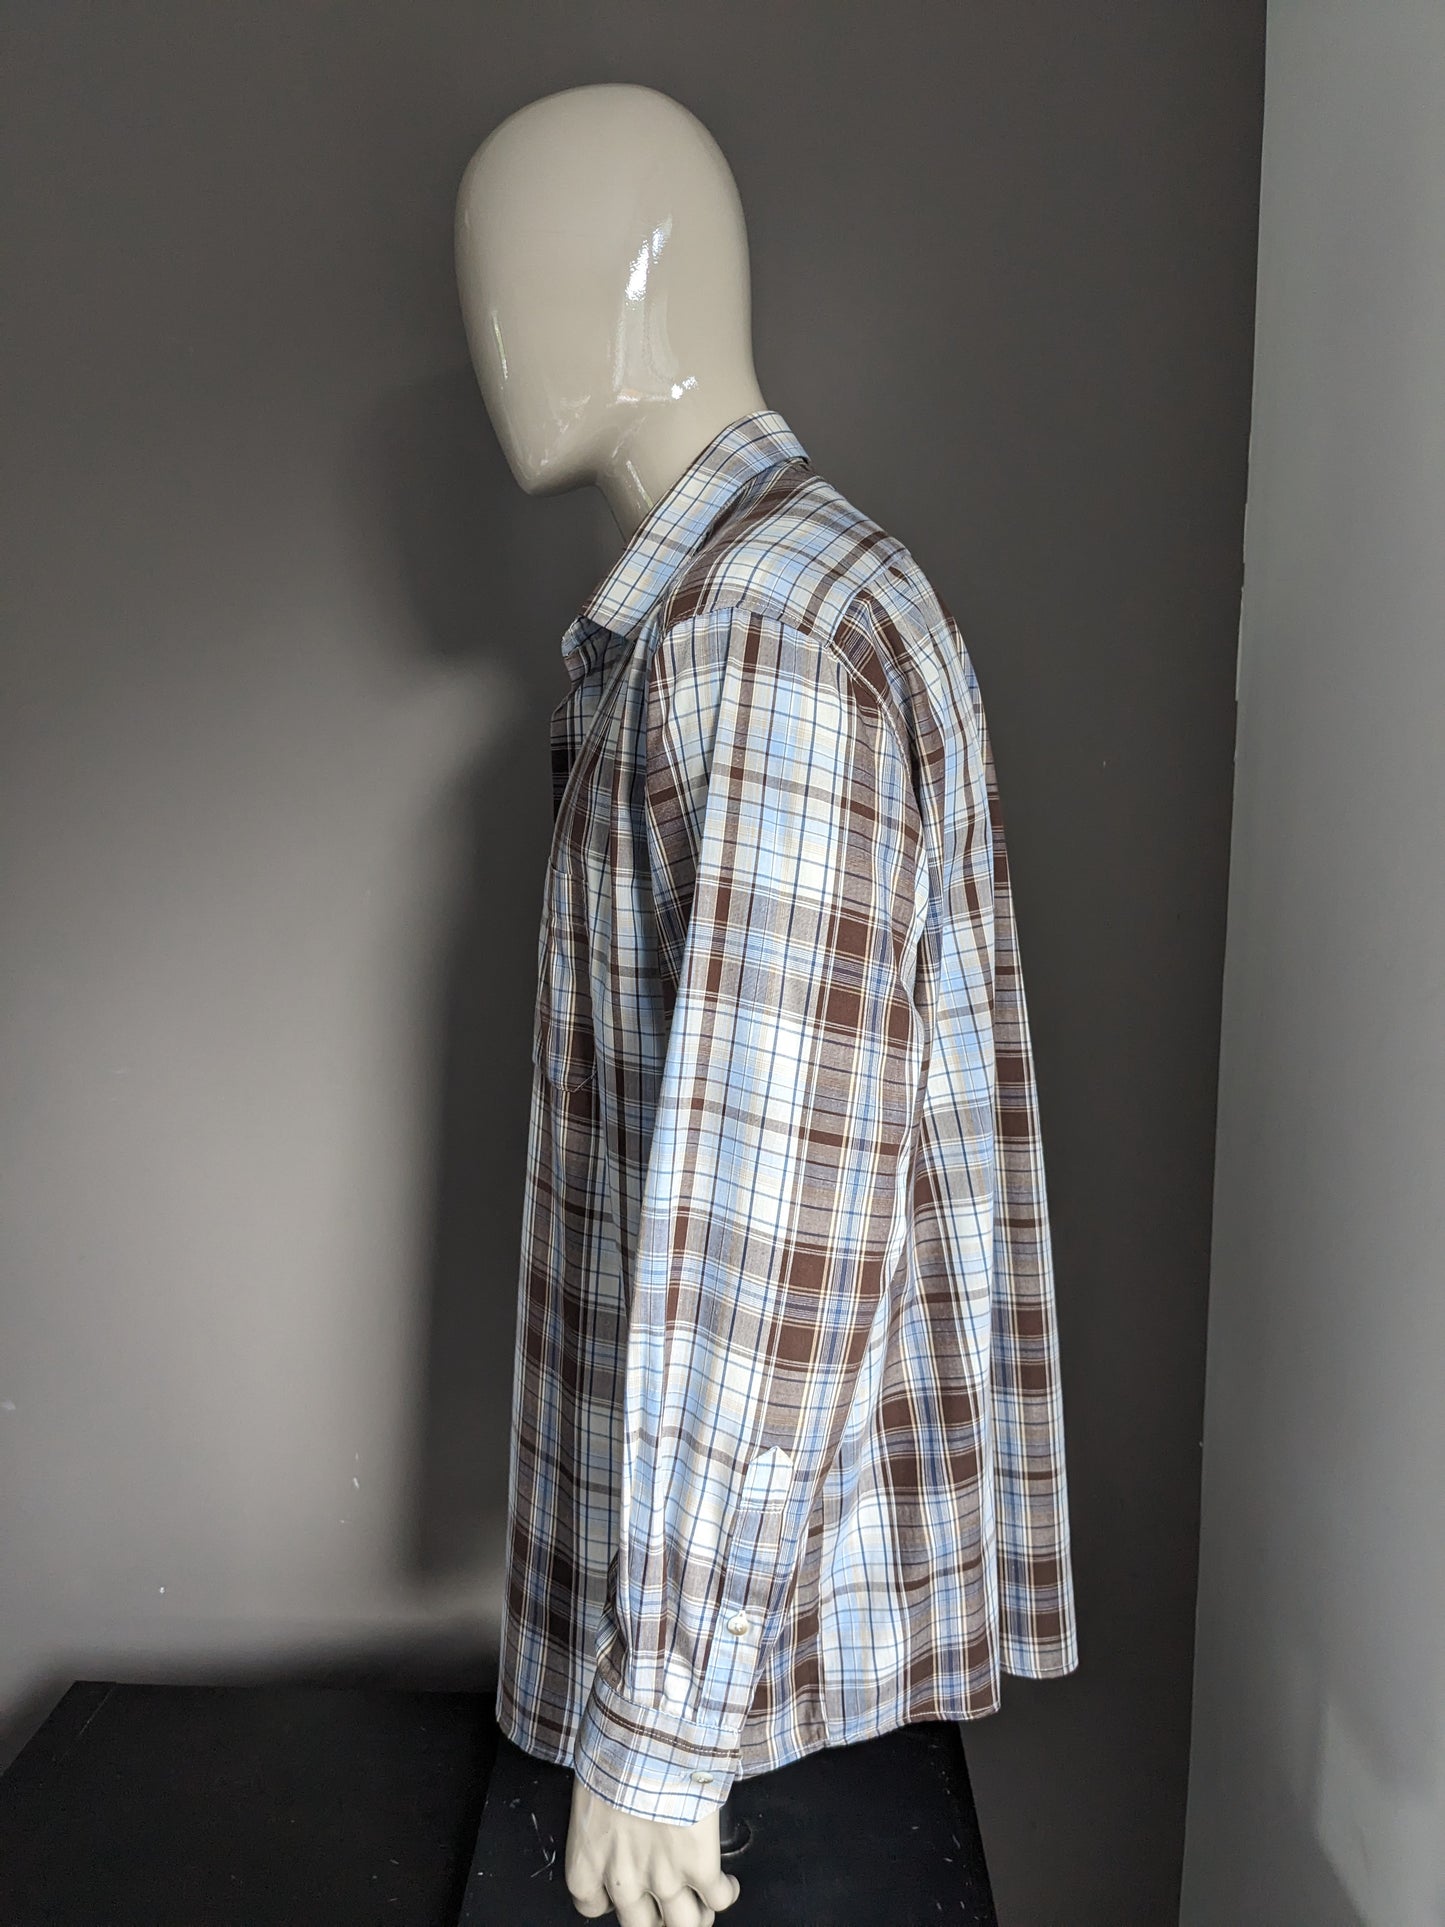 Camisa afilada vintage. Verificador de color beige marrón azul. Tamaño 2xl / 3xl.